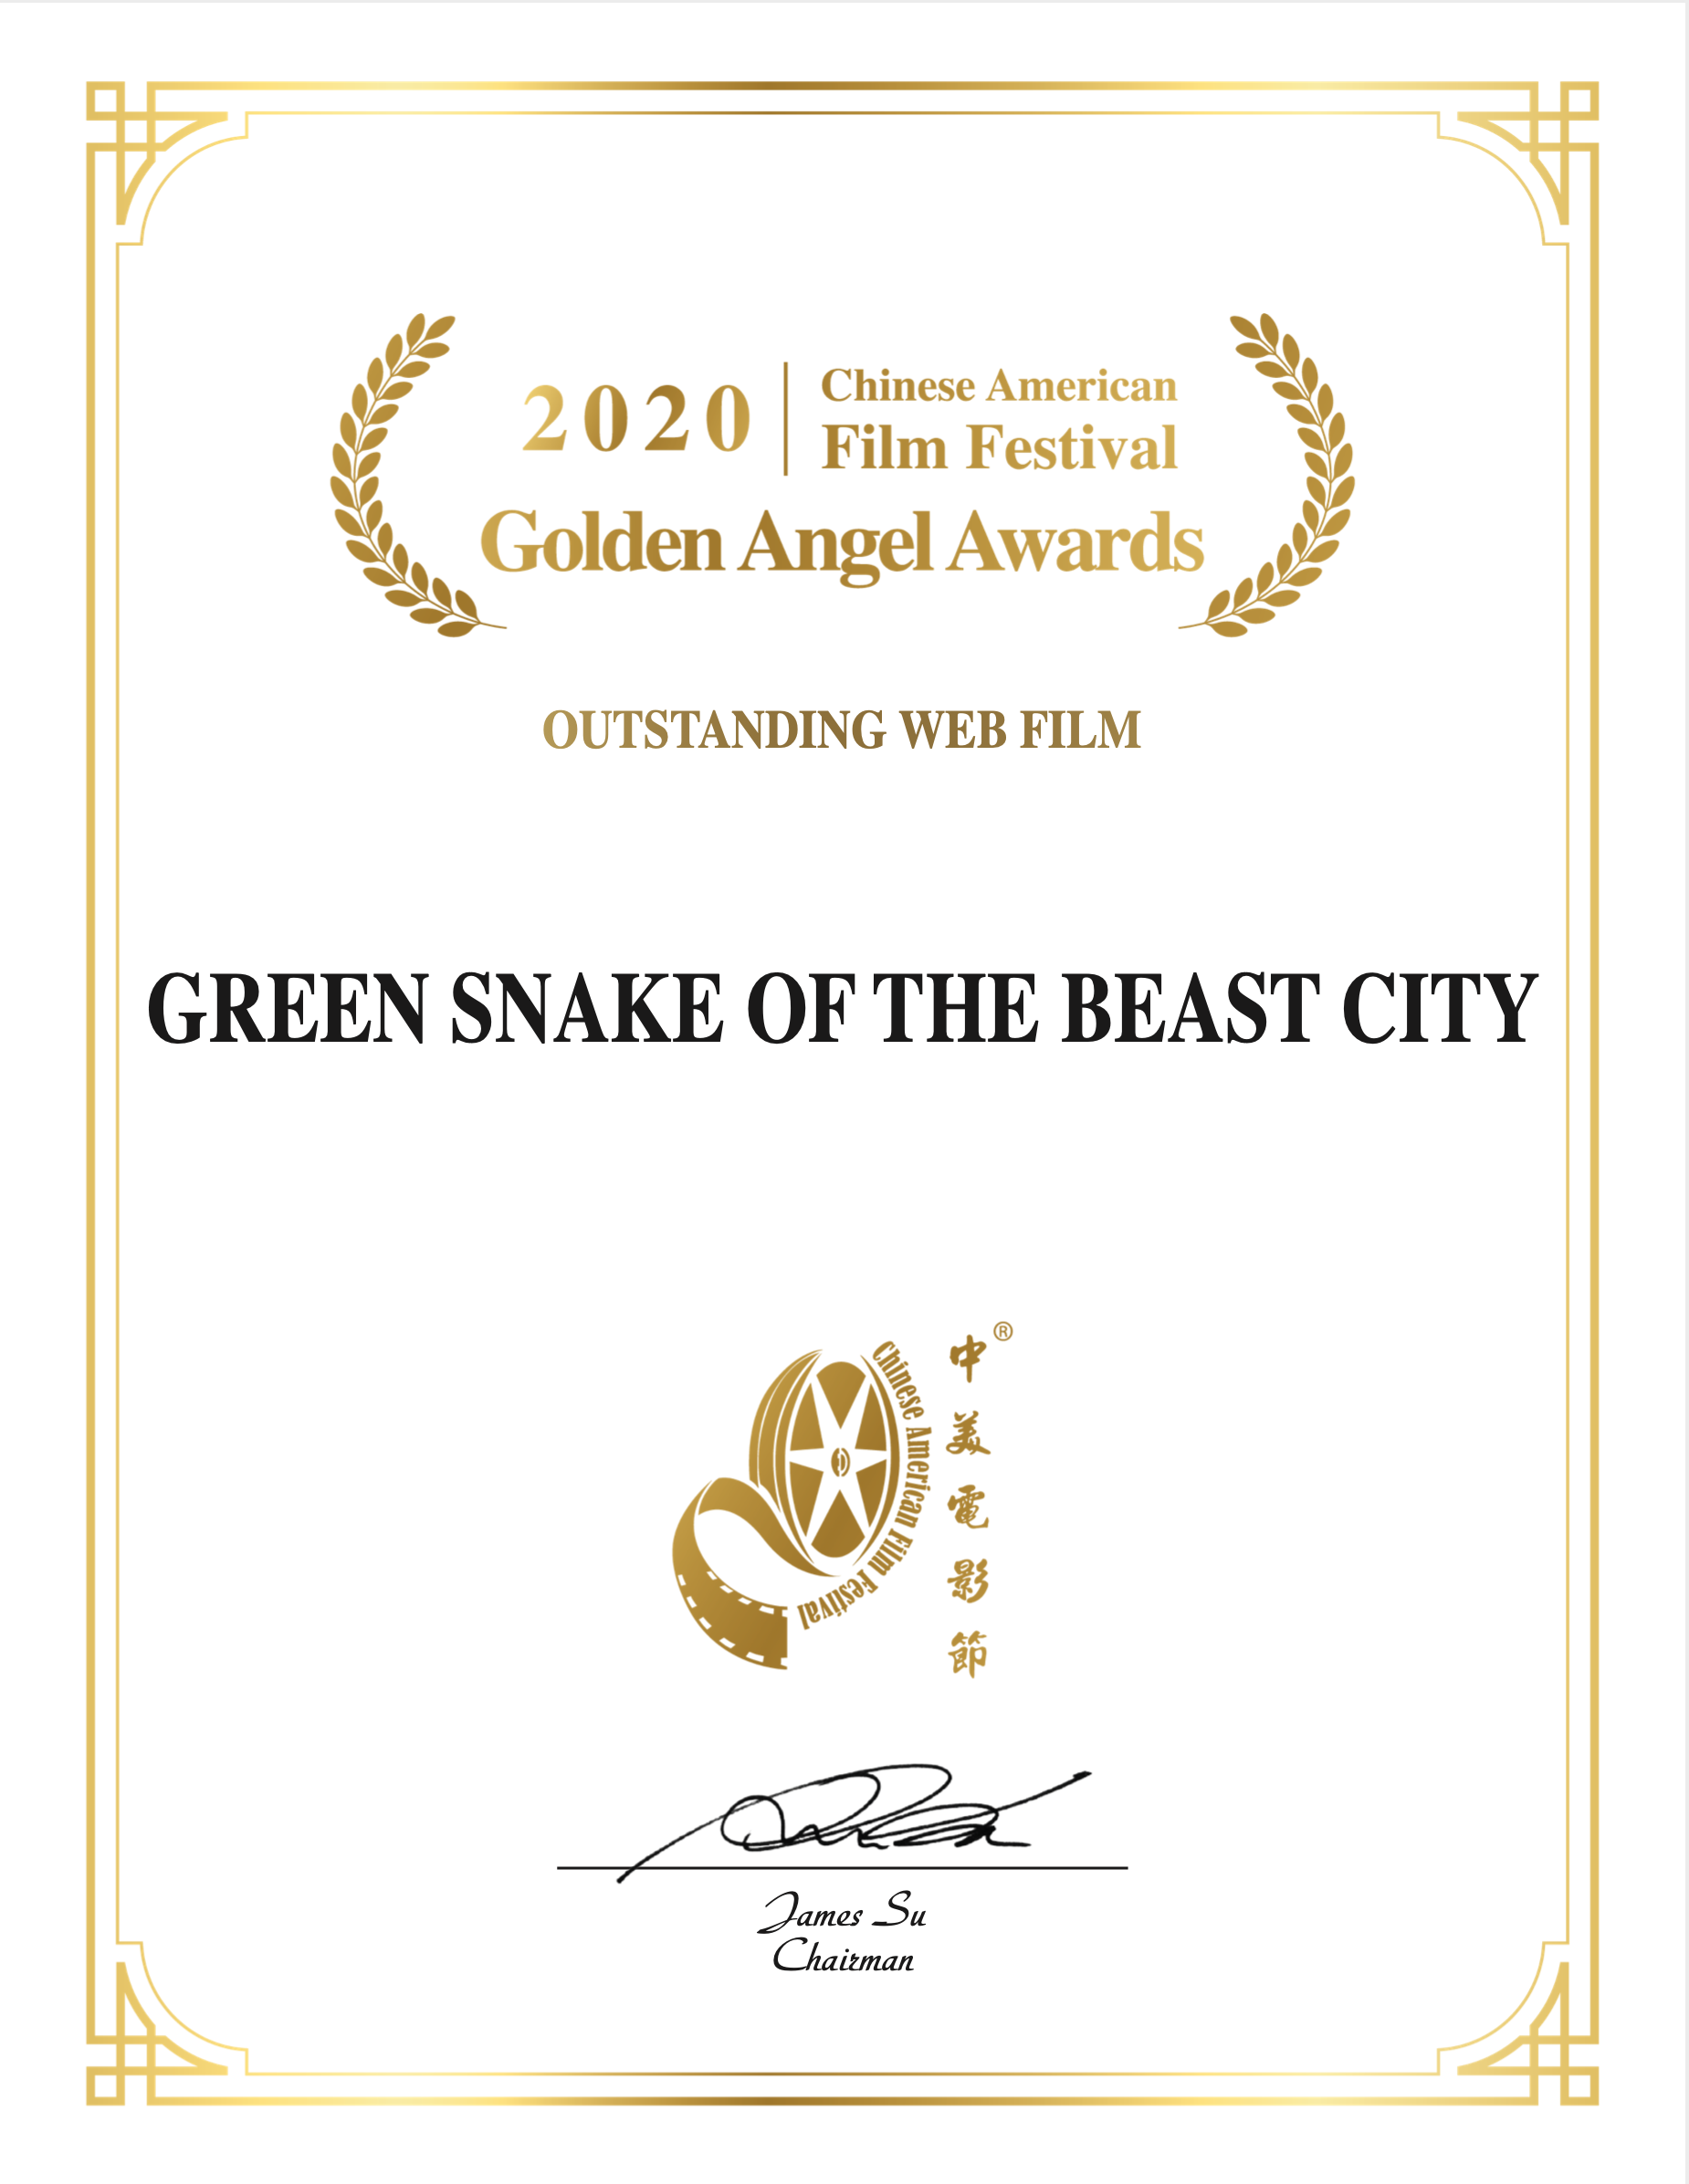 《青蛇之万兽城》获2020年中美电影节“ golden days 使奖”年度优秀网络电影